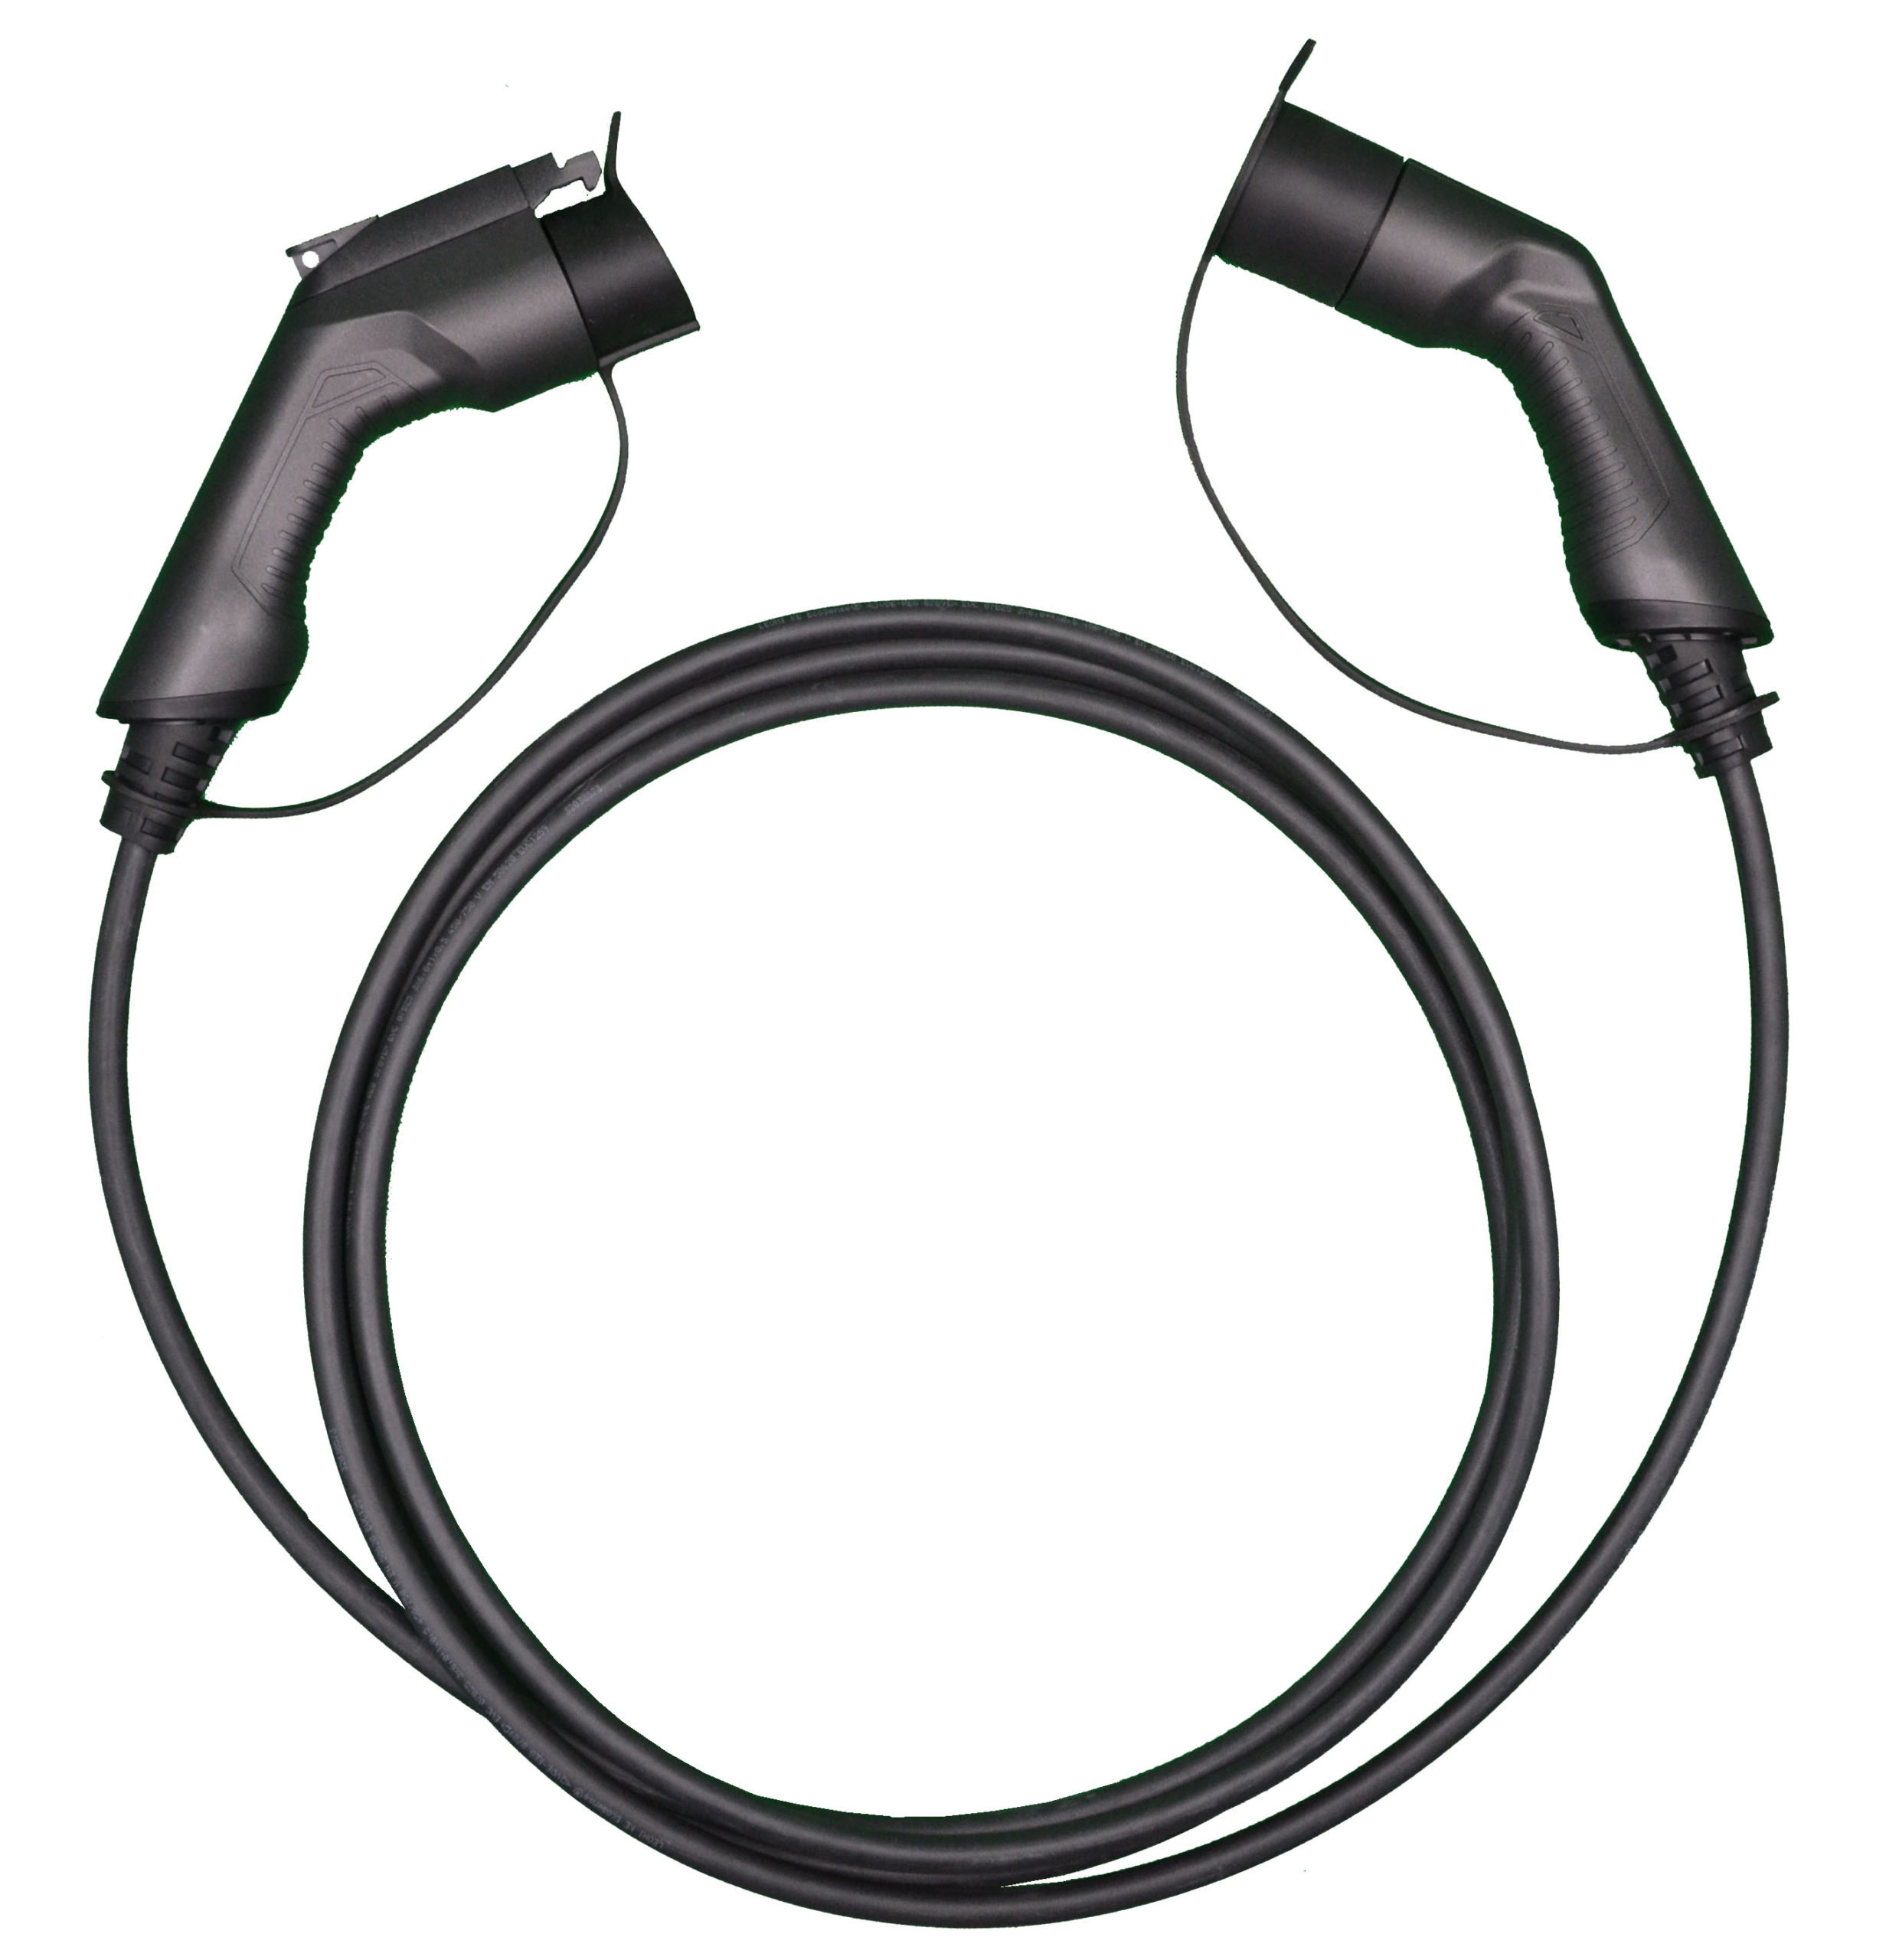 Cable de recarga coche eléctrico -